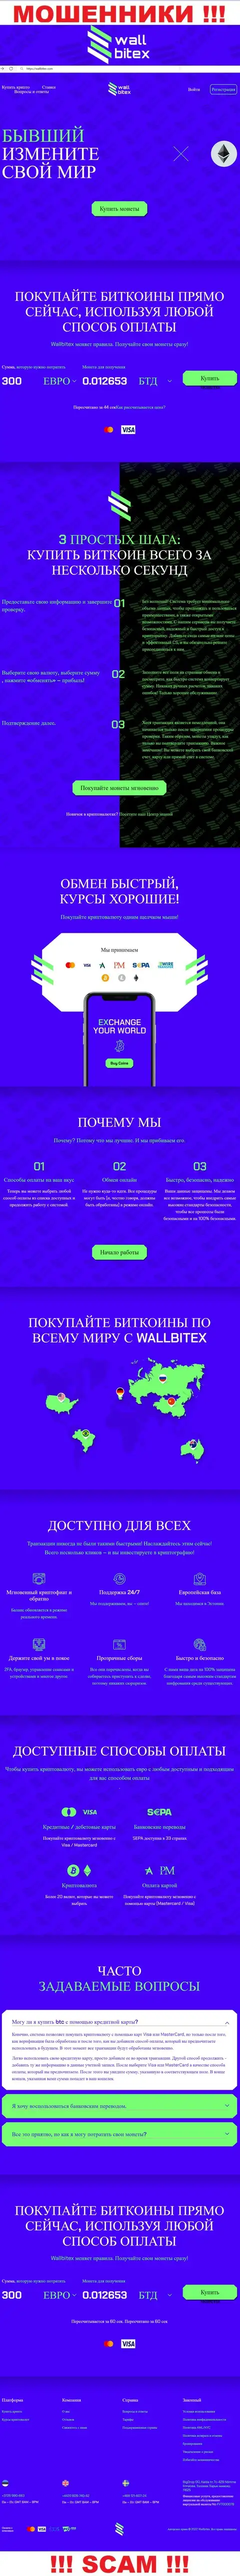 WallBitex Com это официальный интернет-портал неправомерно действующей конторы WallBitex